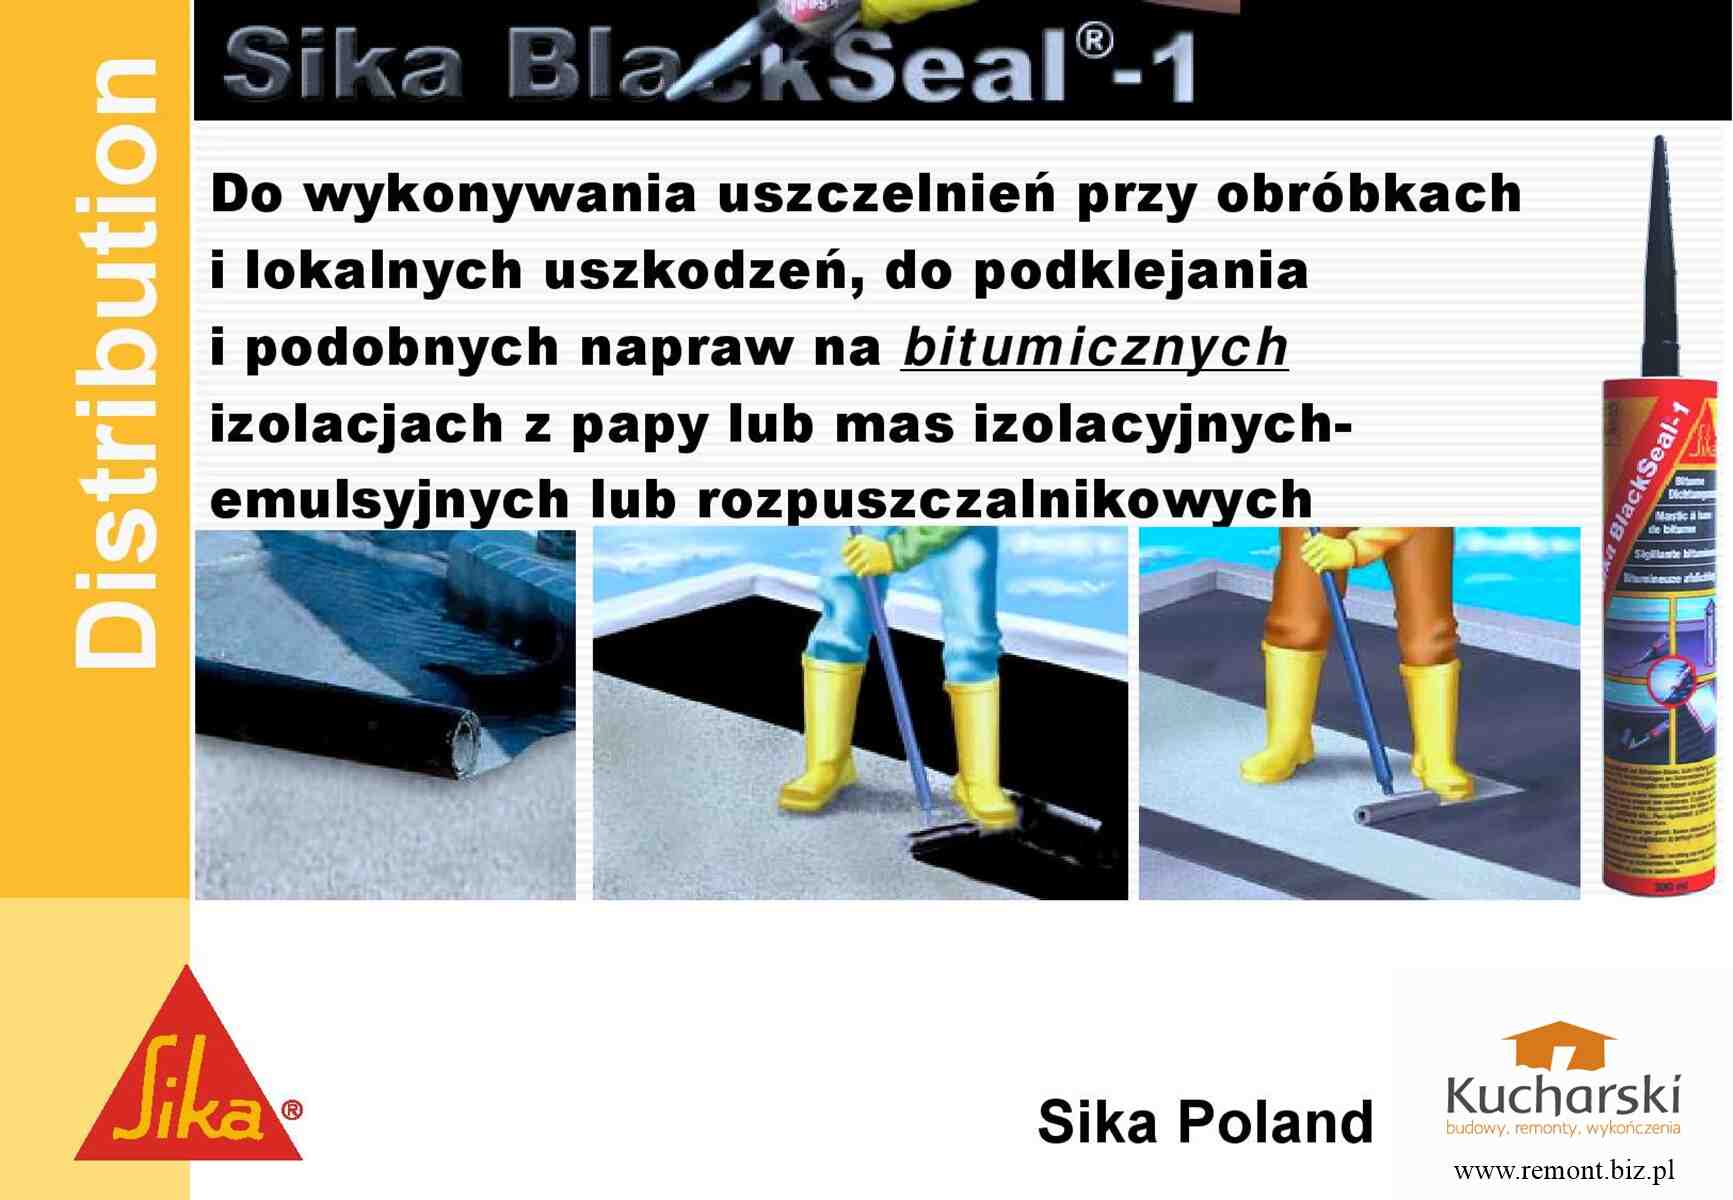 Sika® BlackSeal ® - 1 Bitumiczny uszczelniacz dekarski